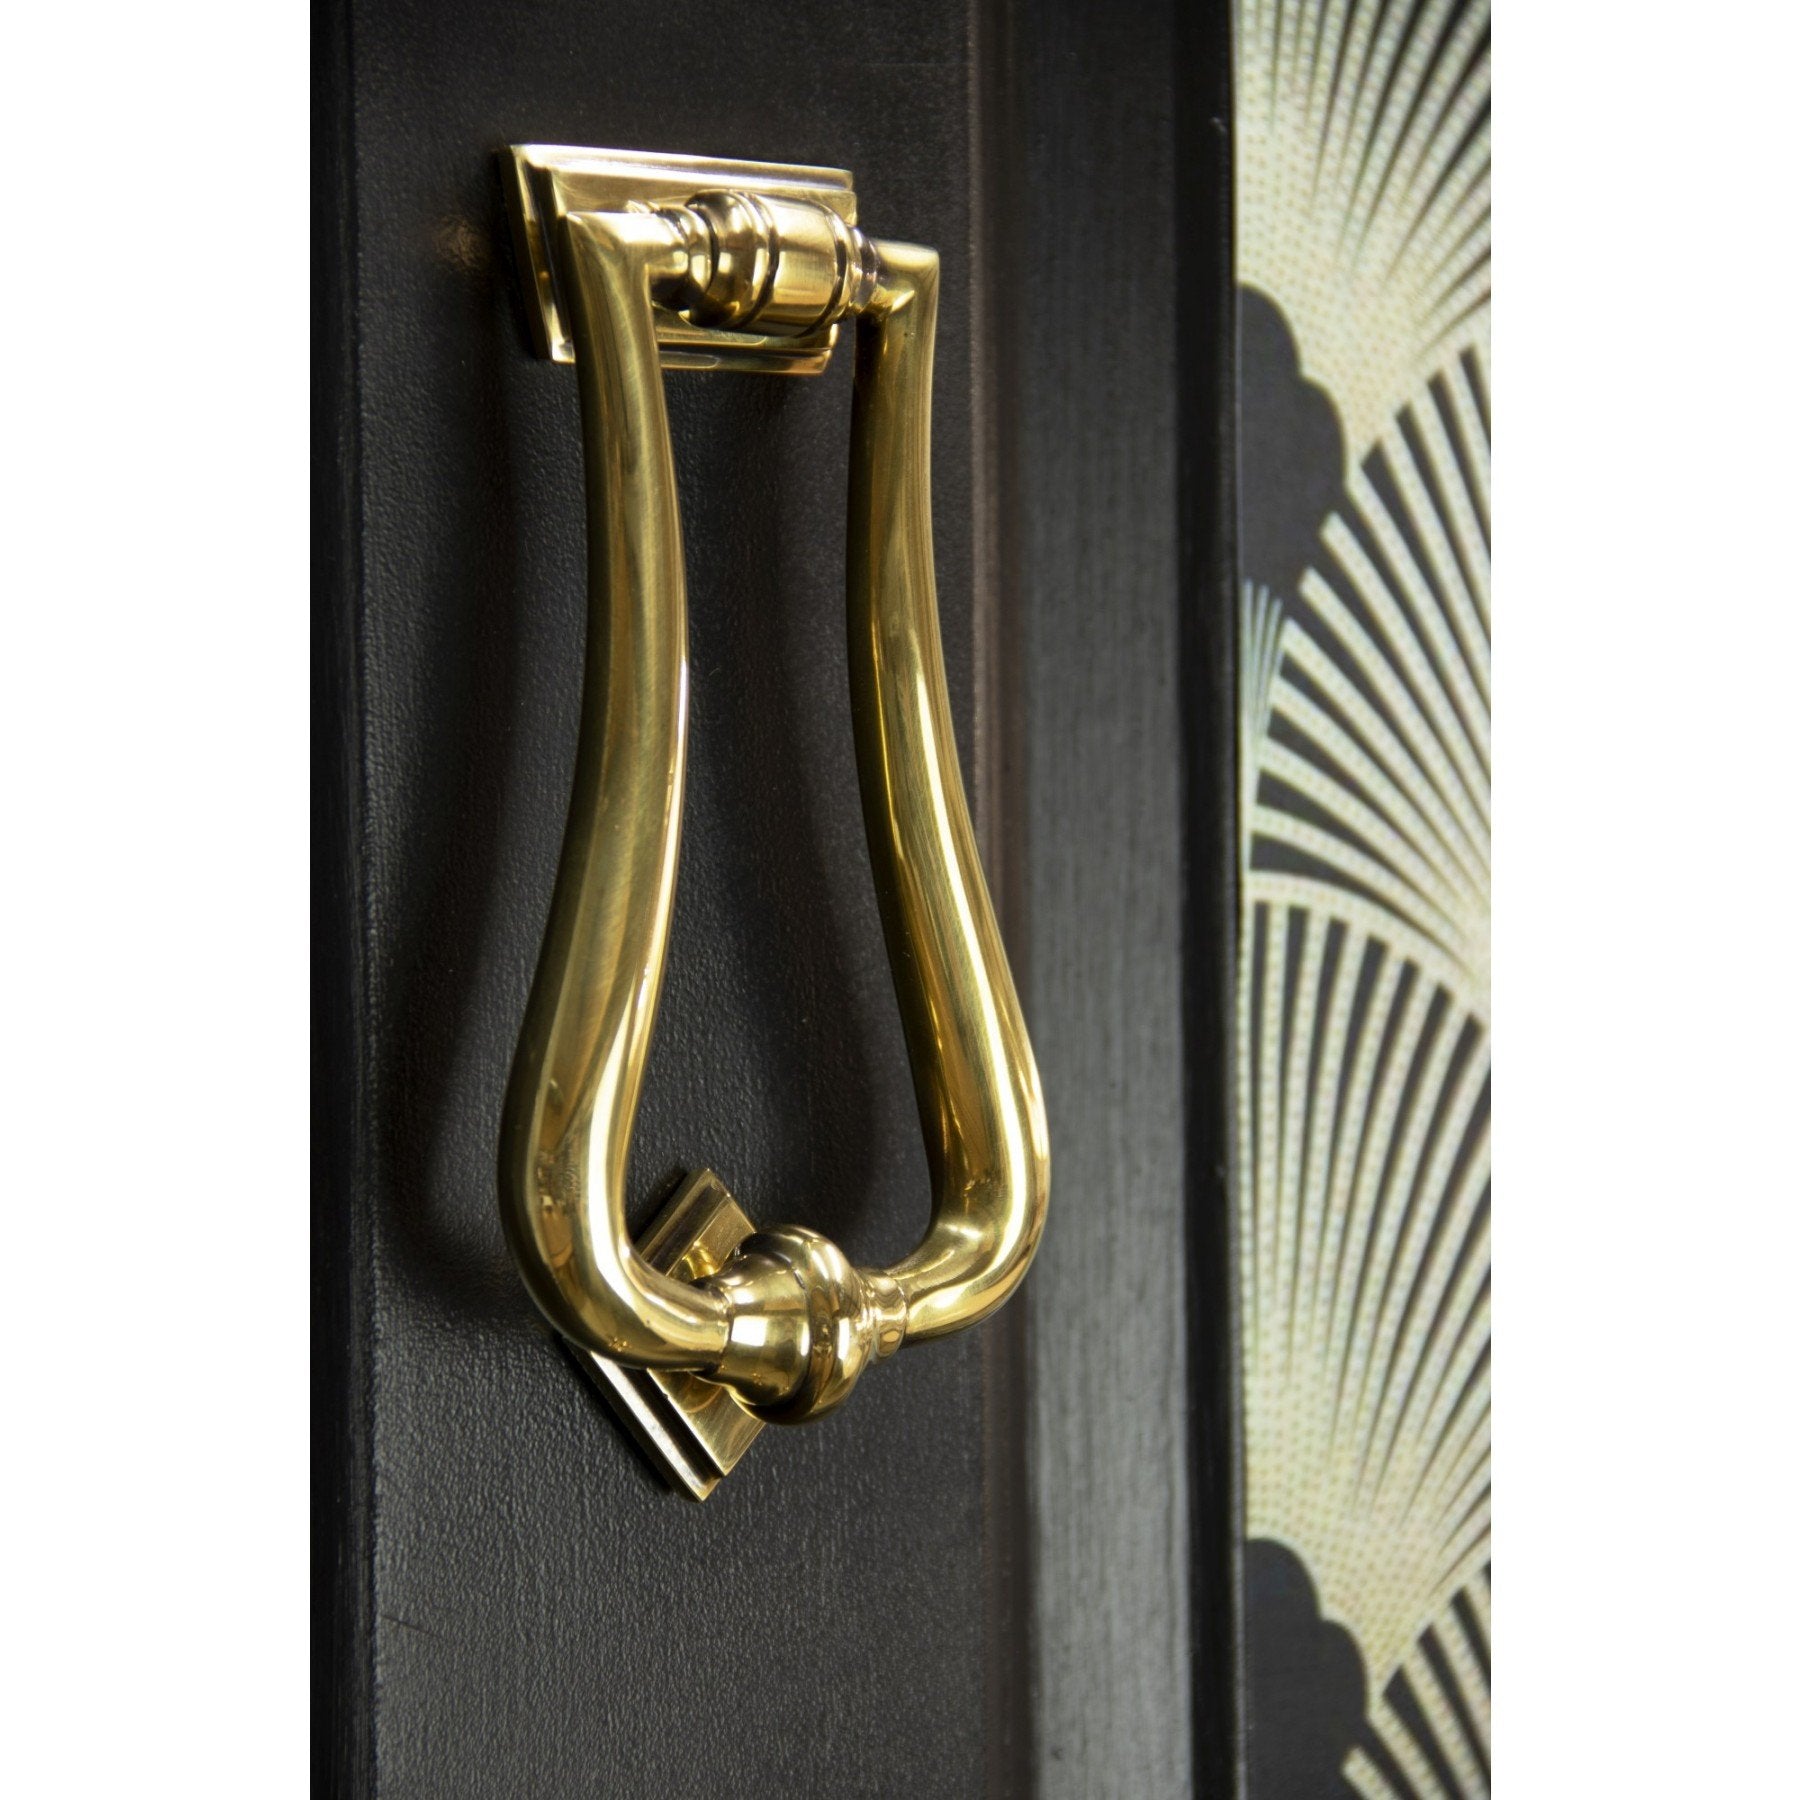 From the Anvil Aged Brass Slimline Art Deco Door Knocker - No.42 Interiors